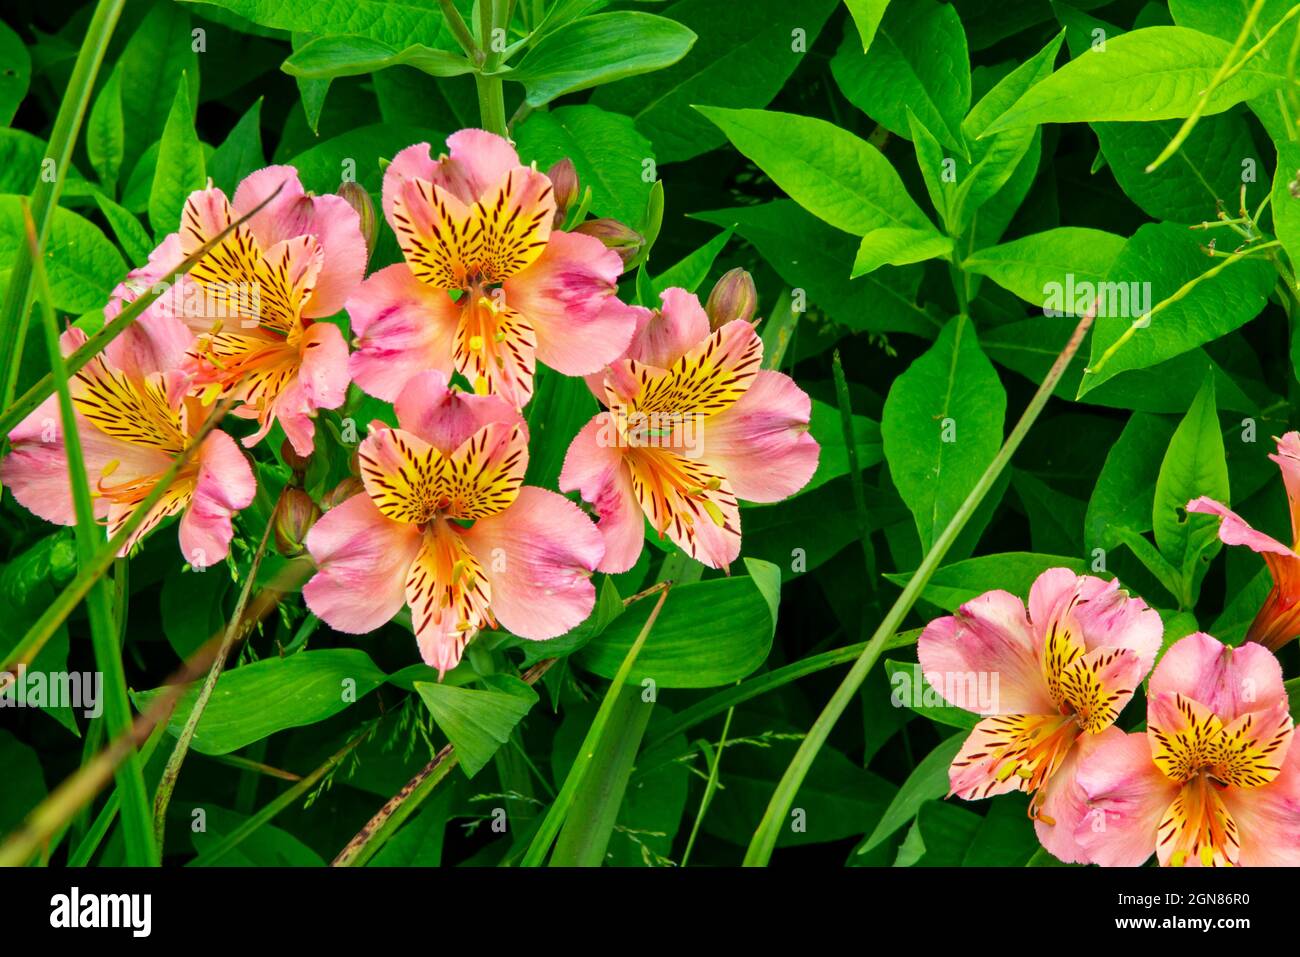 Alstroemeria, ou Lily péruvienne ou Lily des Incas, est un genre de plantes à fleurs de la famille des Alstroemeriaceae indigènes de l'Amérique du Sud. Banque D'Images